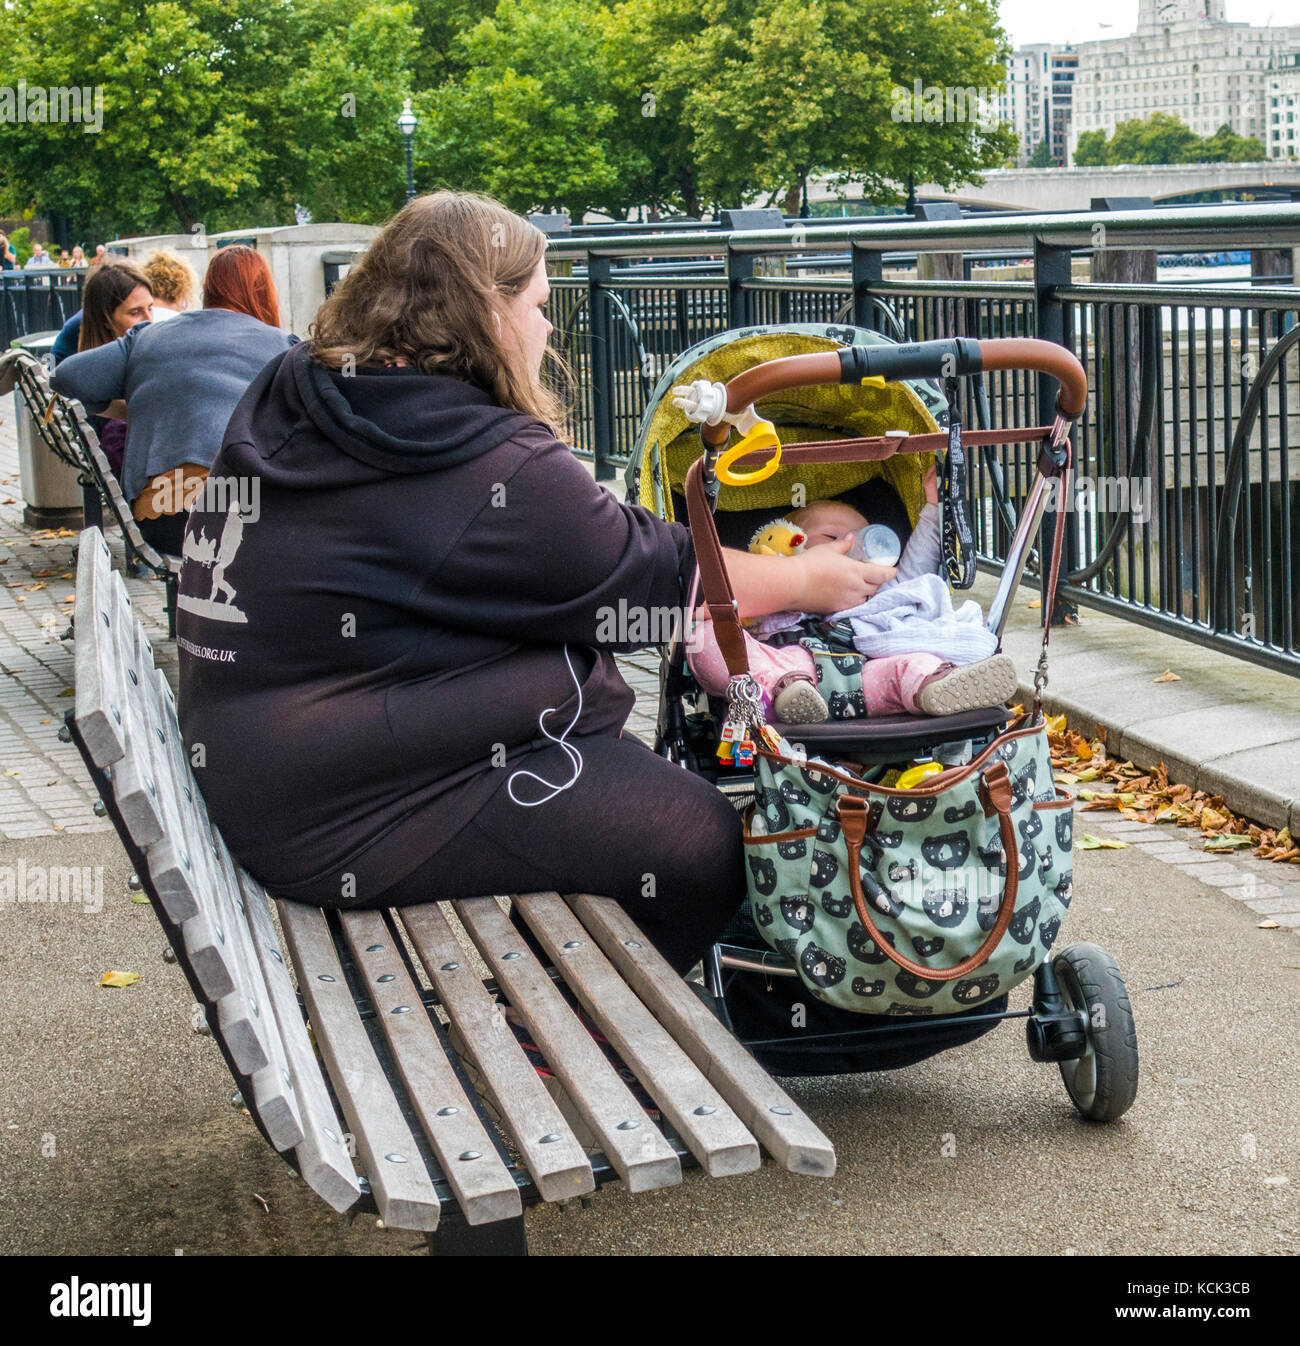 Übergewicht, alleinerziehende Mutter, Teenager, sitzen auf einer Holzbank, das Füttern mit der Flasche Milch für Ihr Baby im Kinderwagen, South Bank, London, England, UK. Stockfoto